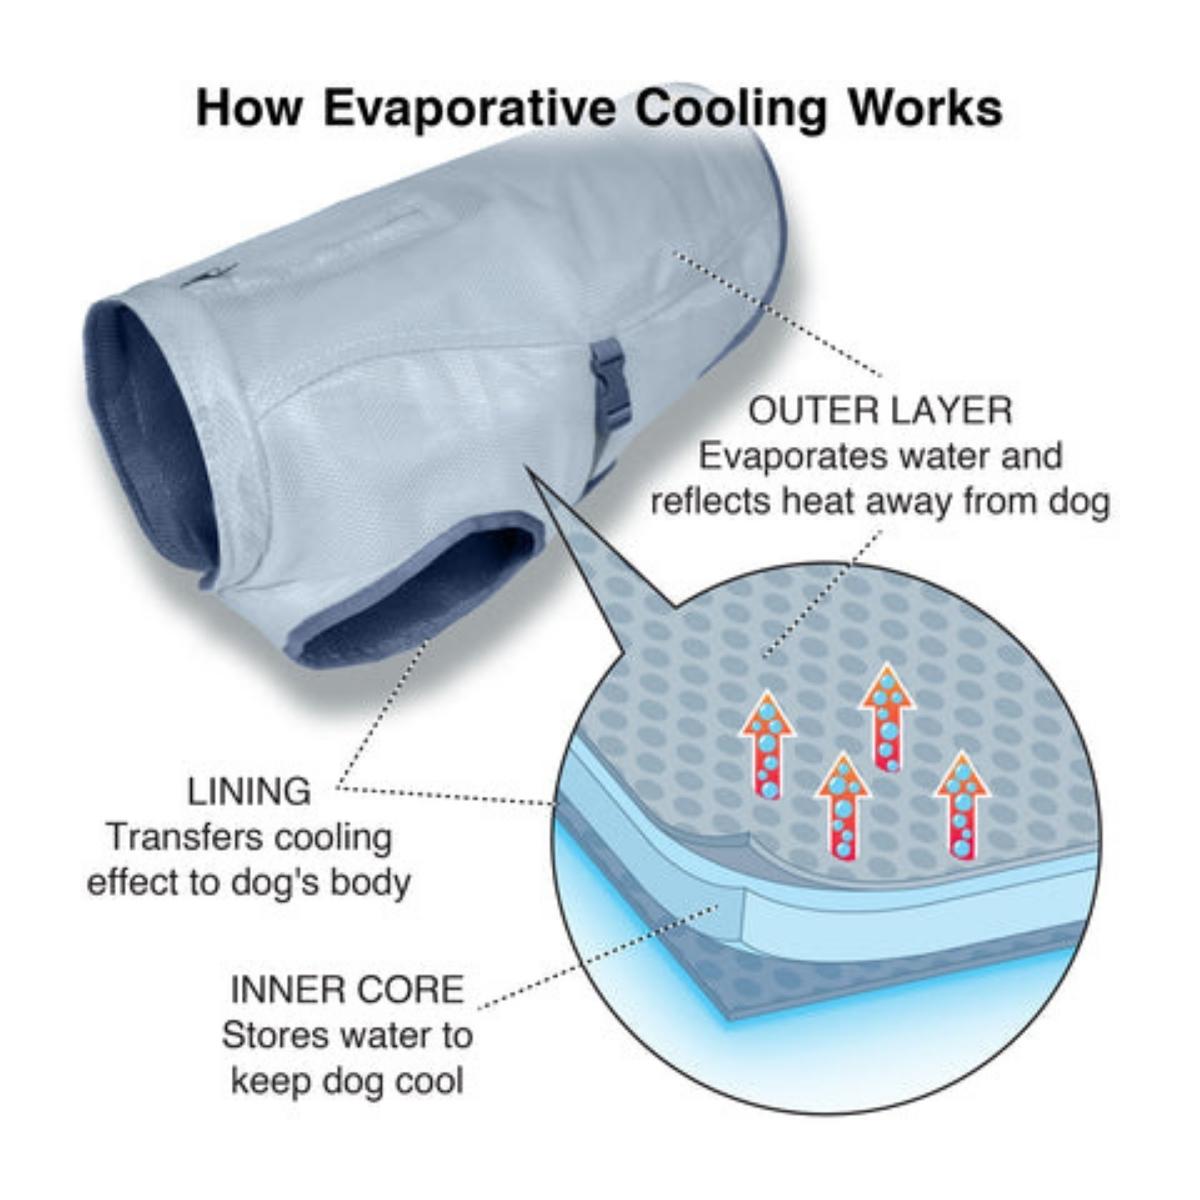 Chaleco de Enfriamiento Dog Core Cooling Vest de Kurgo